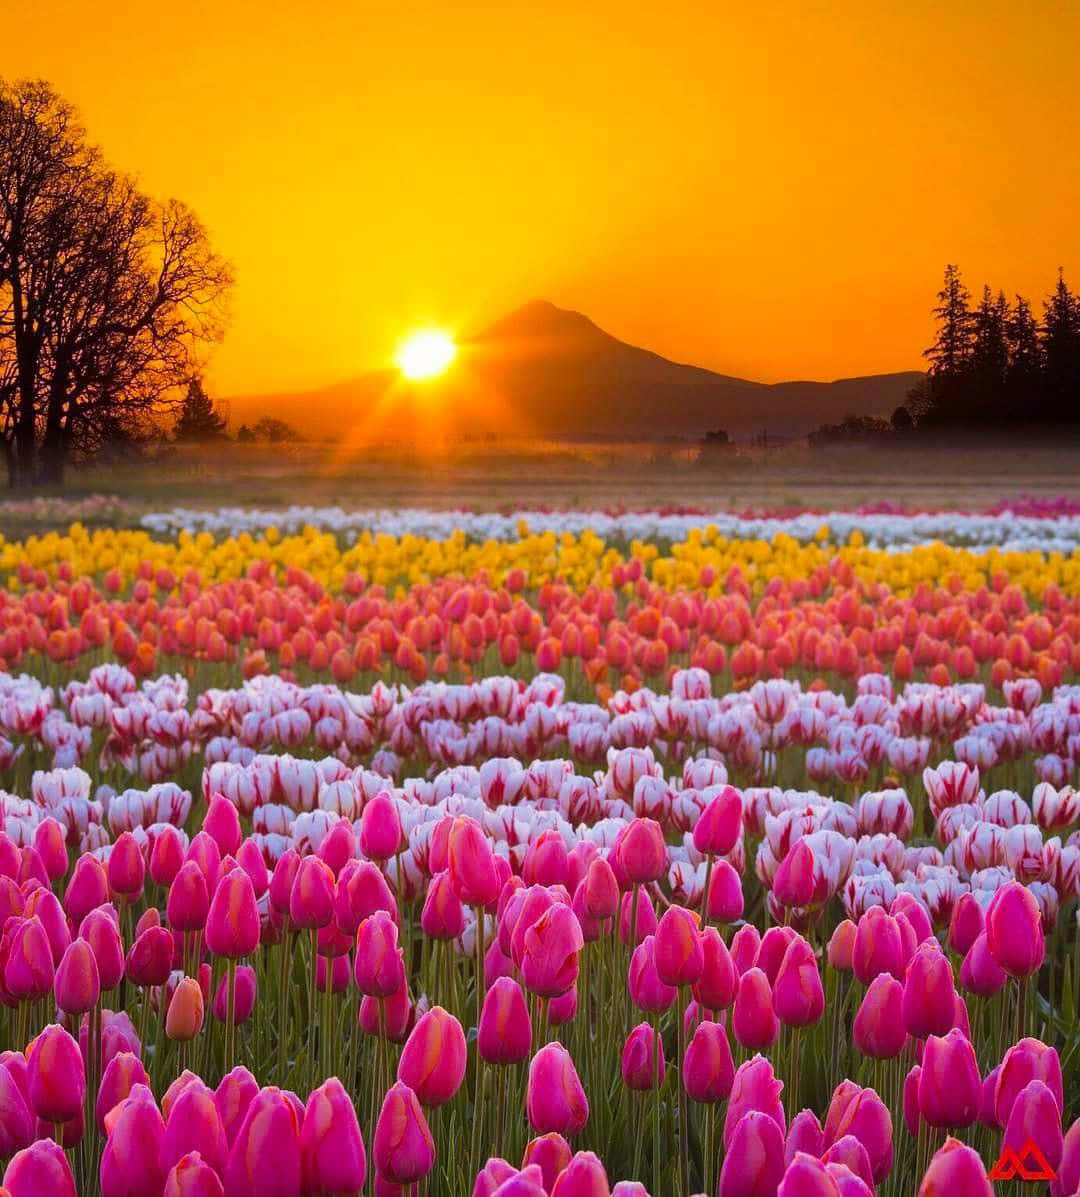 Uncampo De Tulipanes Rosados Y Blancos Con El Sol Poniéndose Detrás De Ellos